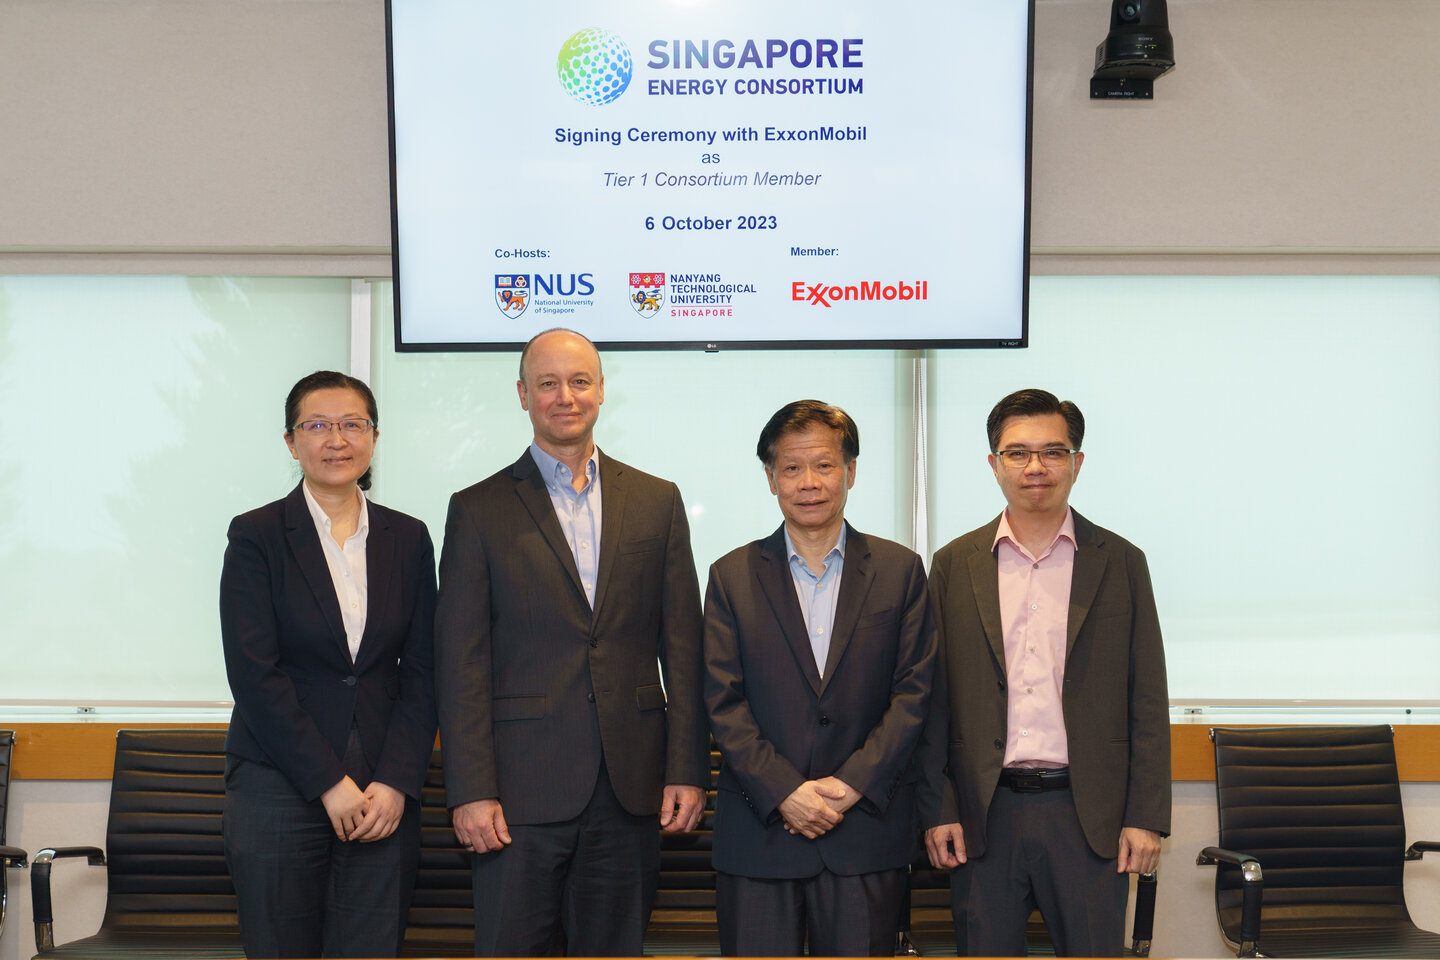 Prof Liu Bin, Dr Nick Clausi, Prof Lam Khin Yong and Dr Ng Wai Kiong